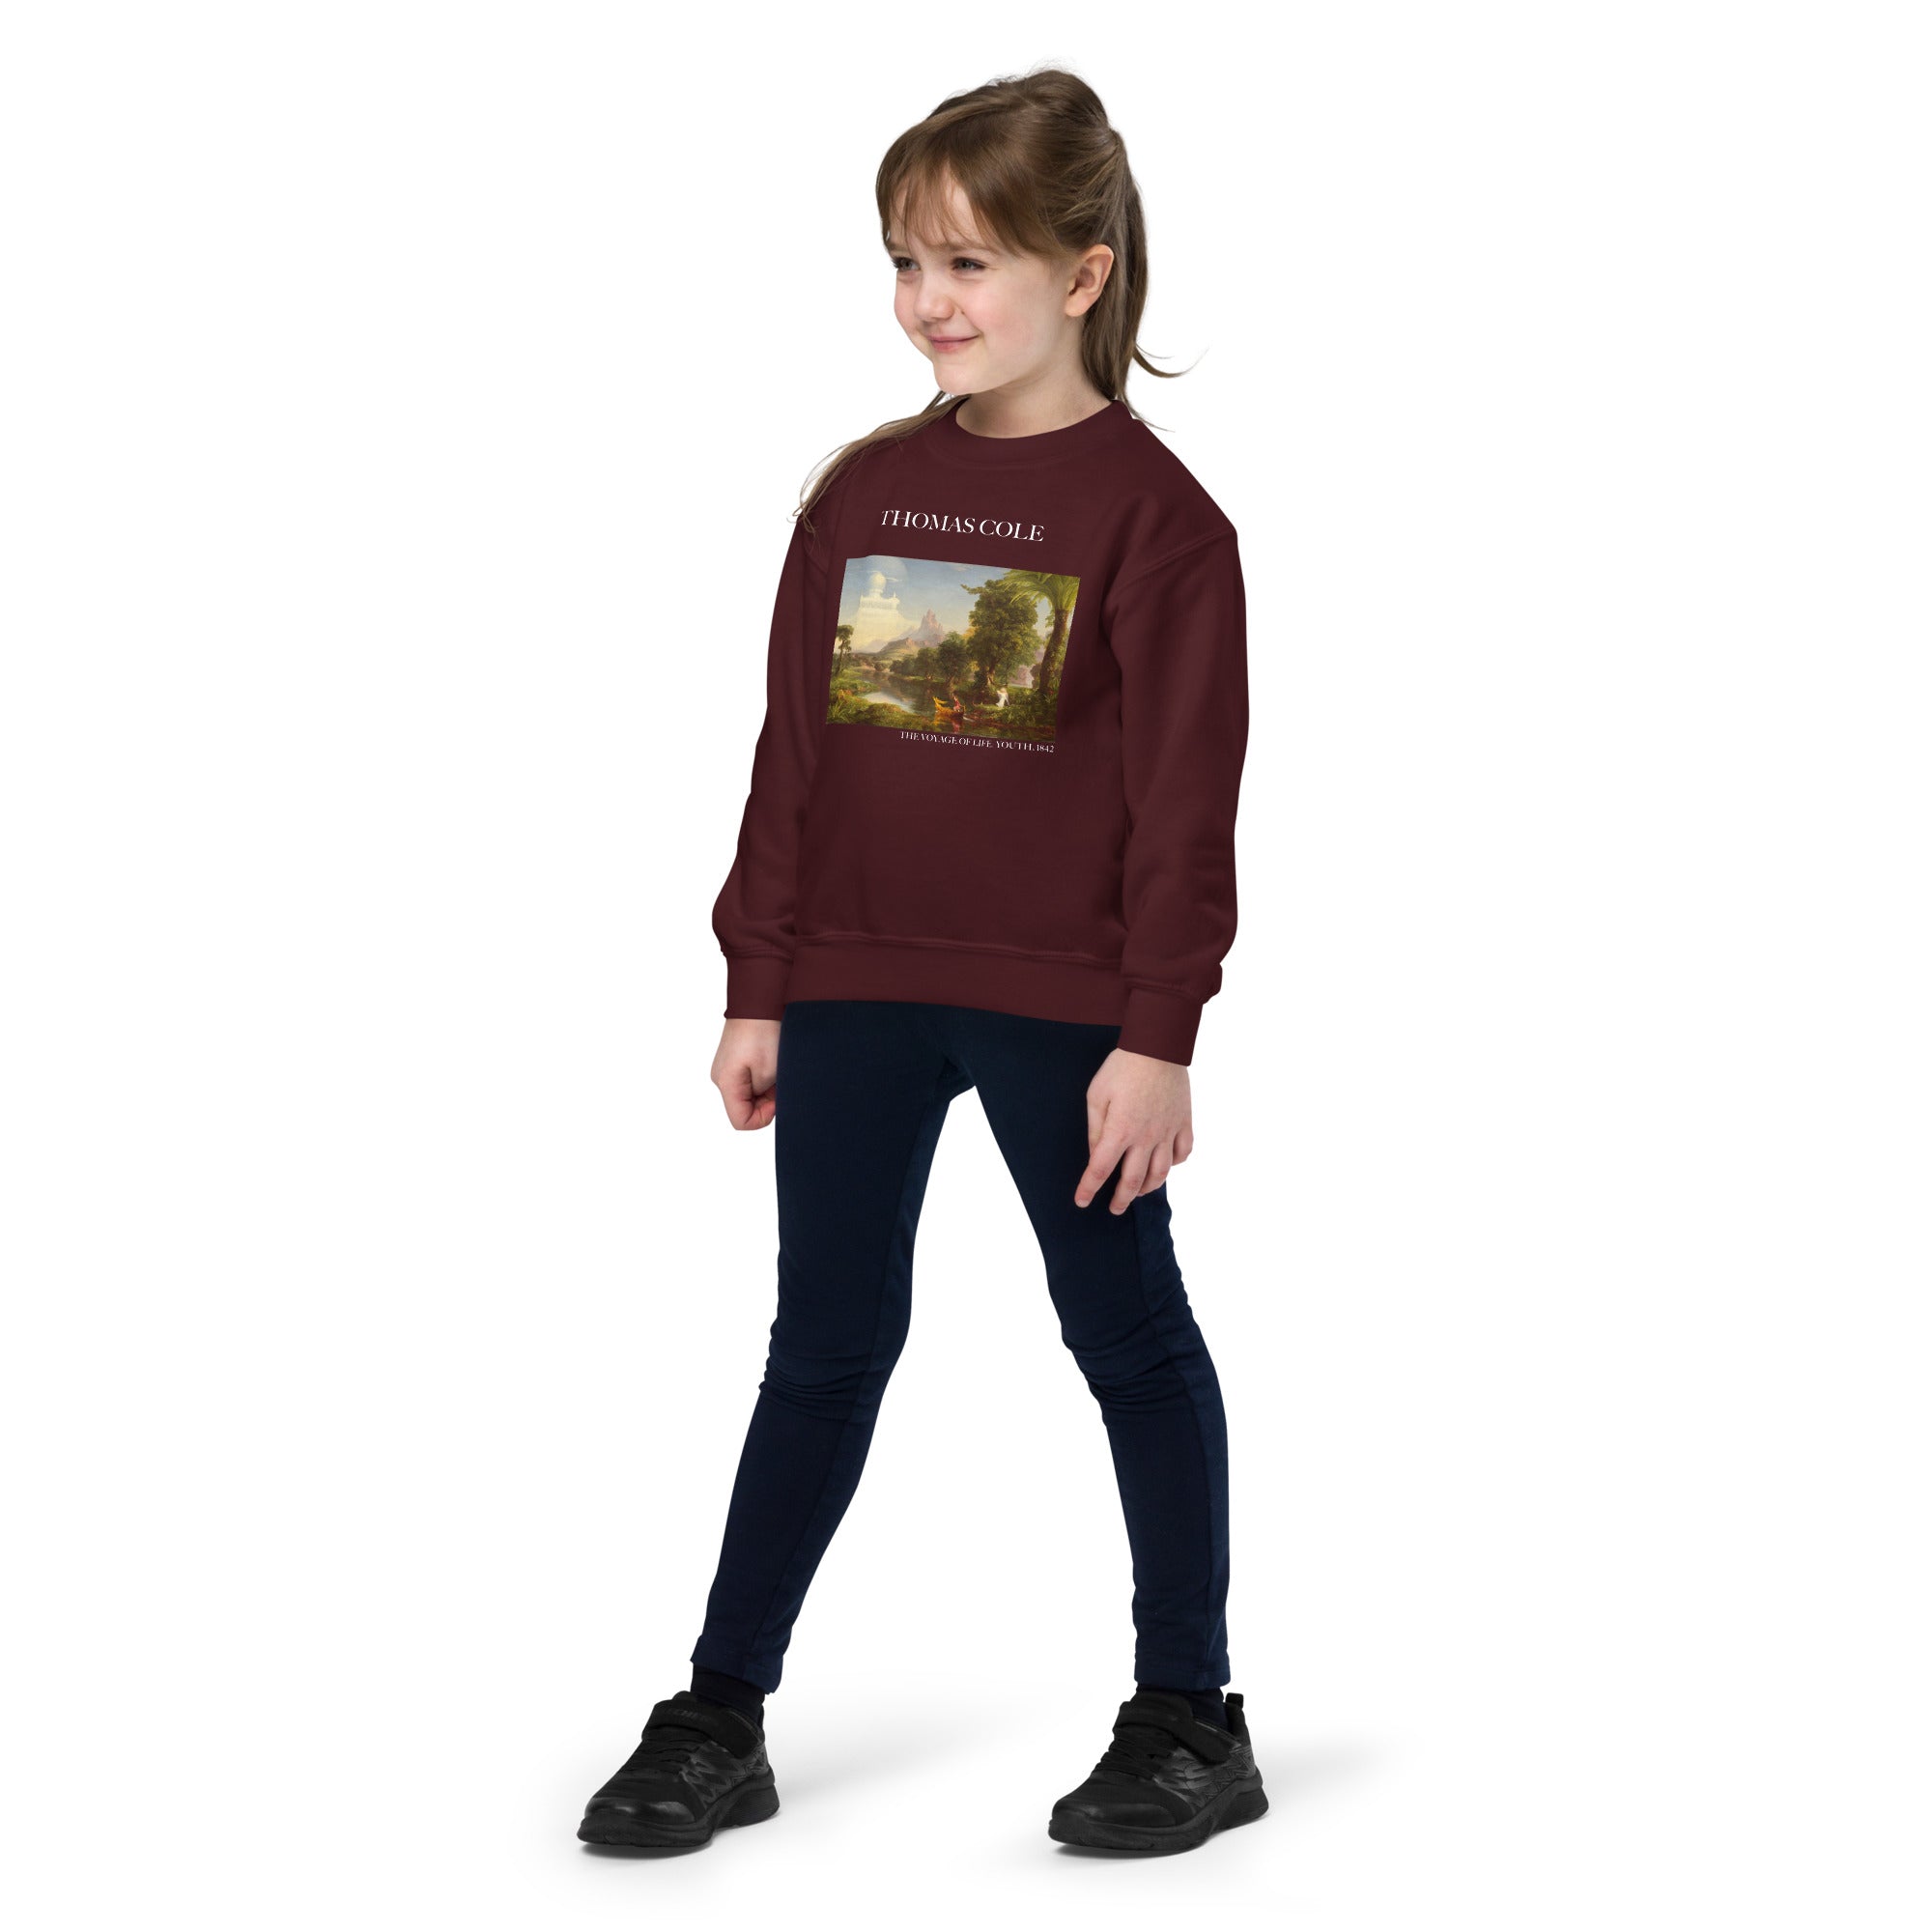 Thomas Cole „Die Reise des Lebens: Jugend“ – berühmtes Gemälde – Rundhals-Sweatshirt | Premium-Kunst-Sweatshirt für Jugendliche